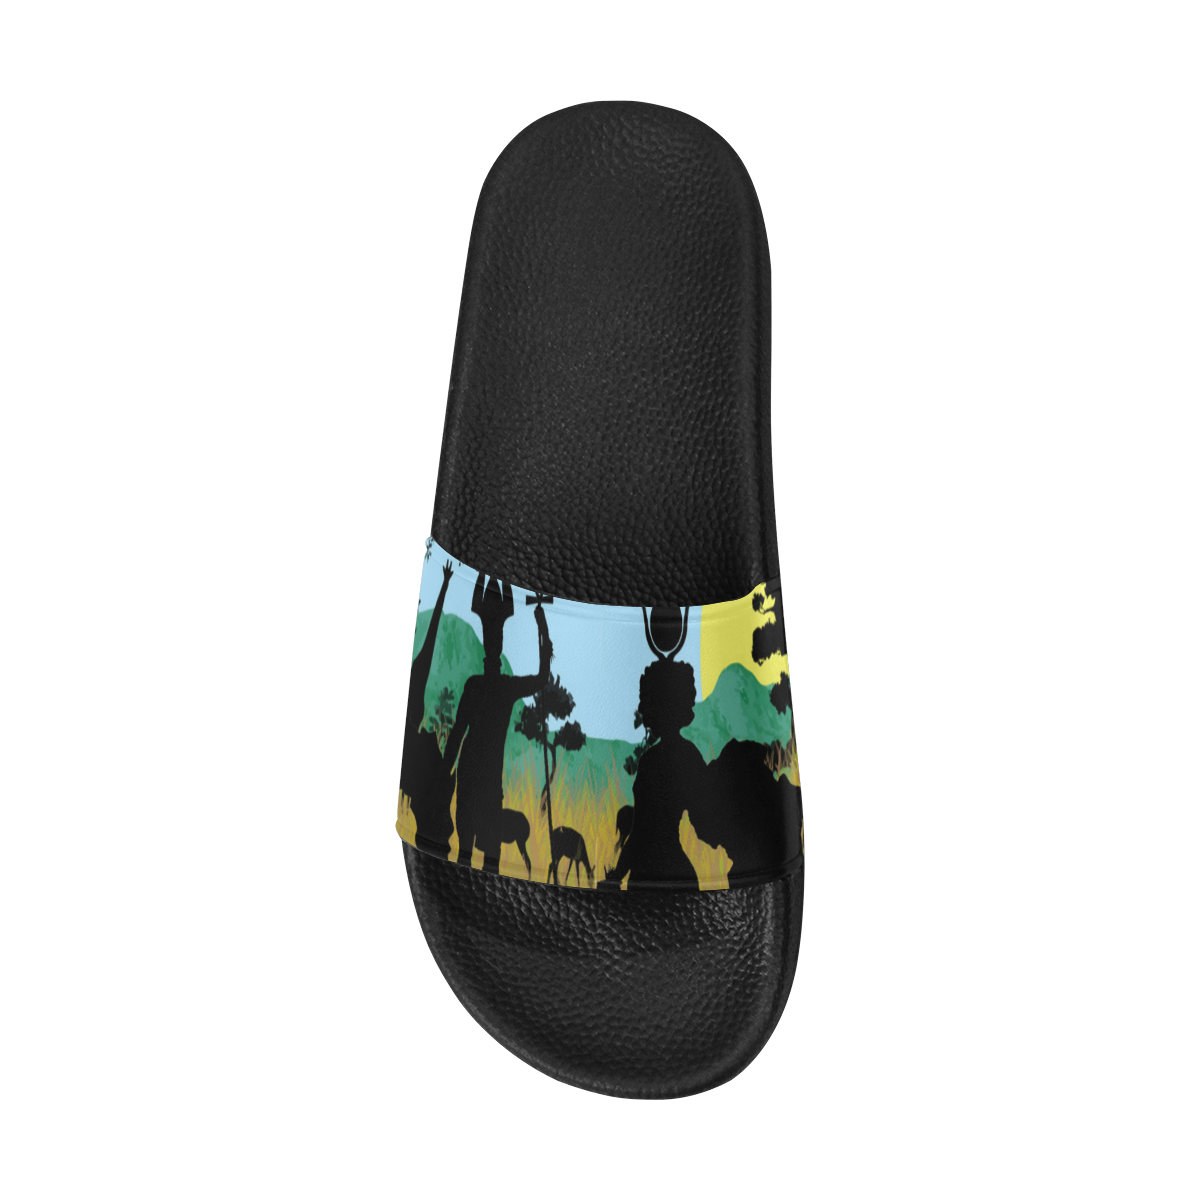 SAFARI NTR WARRIOR Women's Slide Sandals (Model 057)